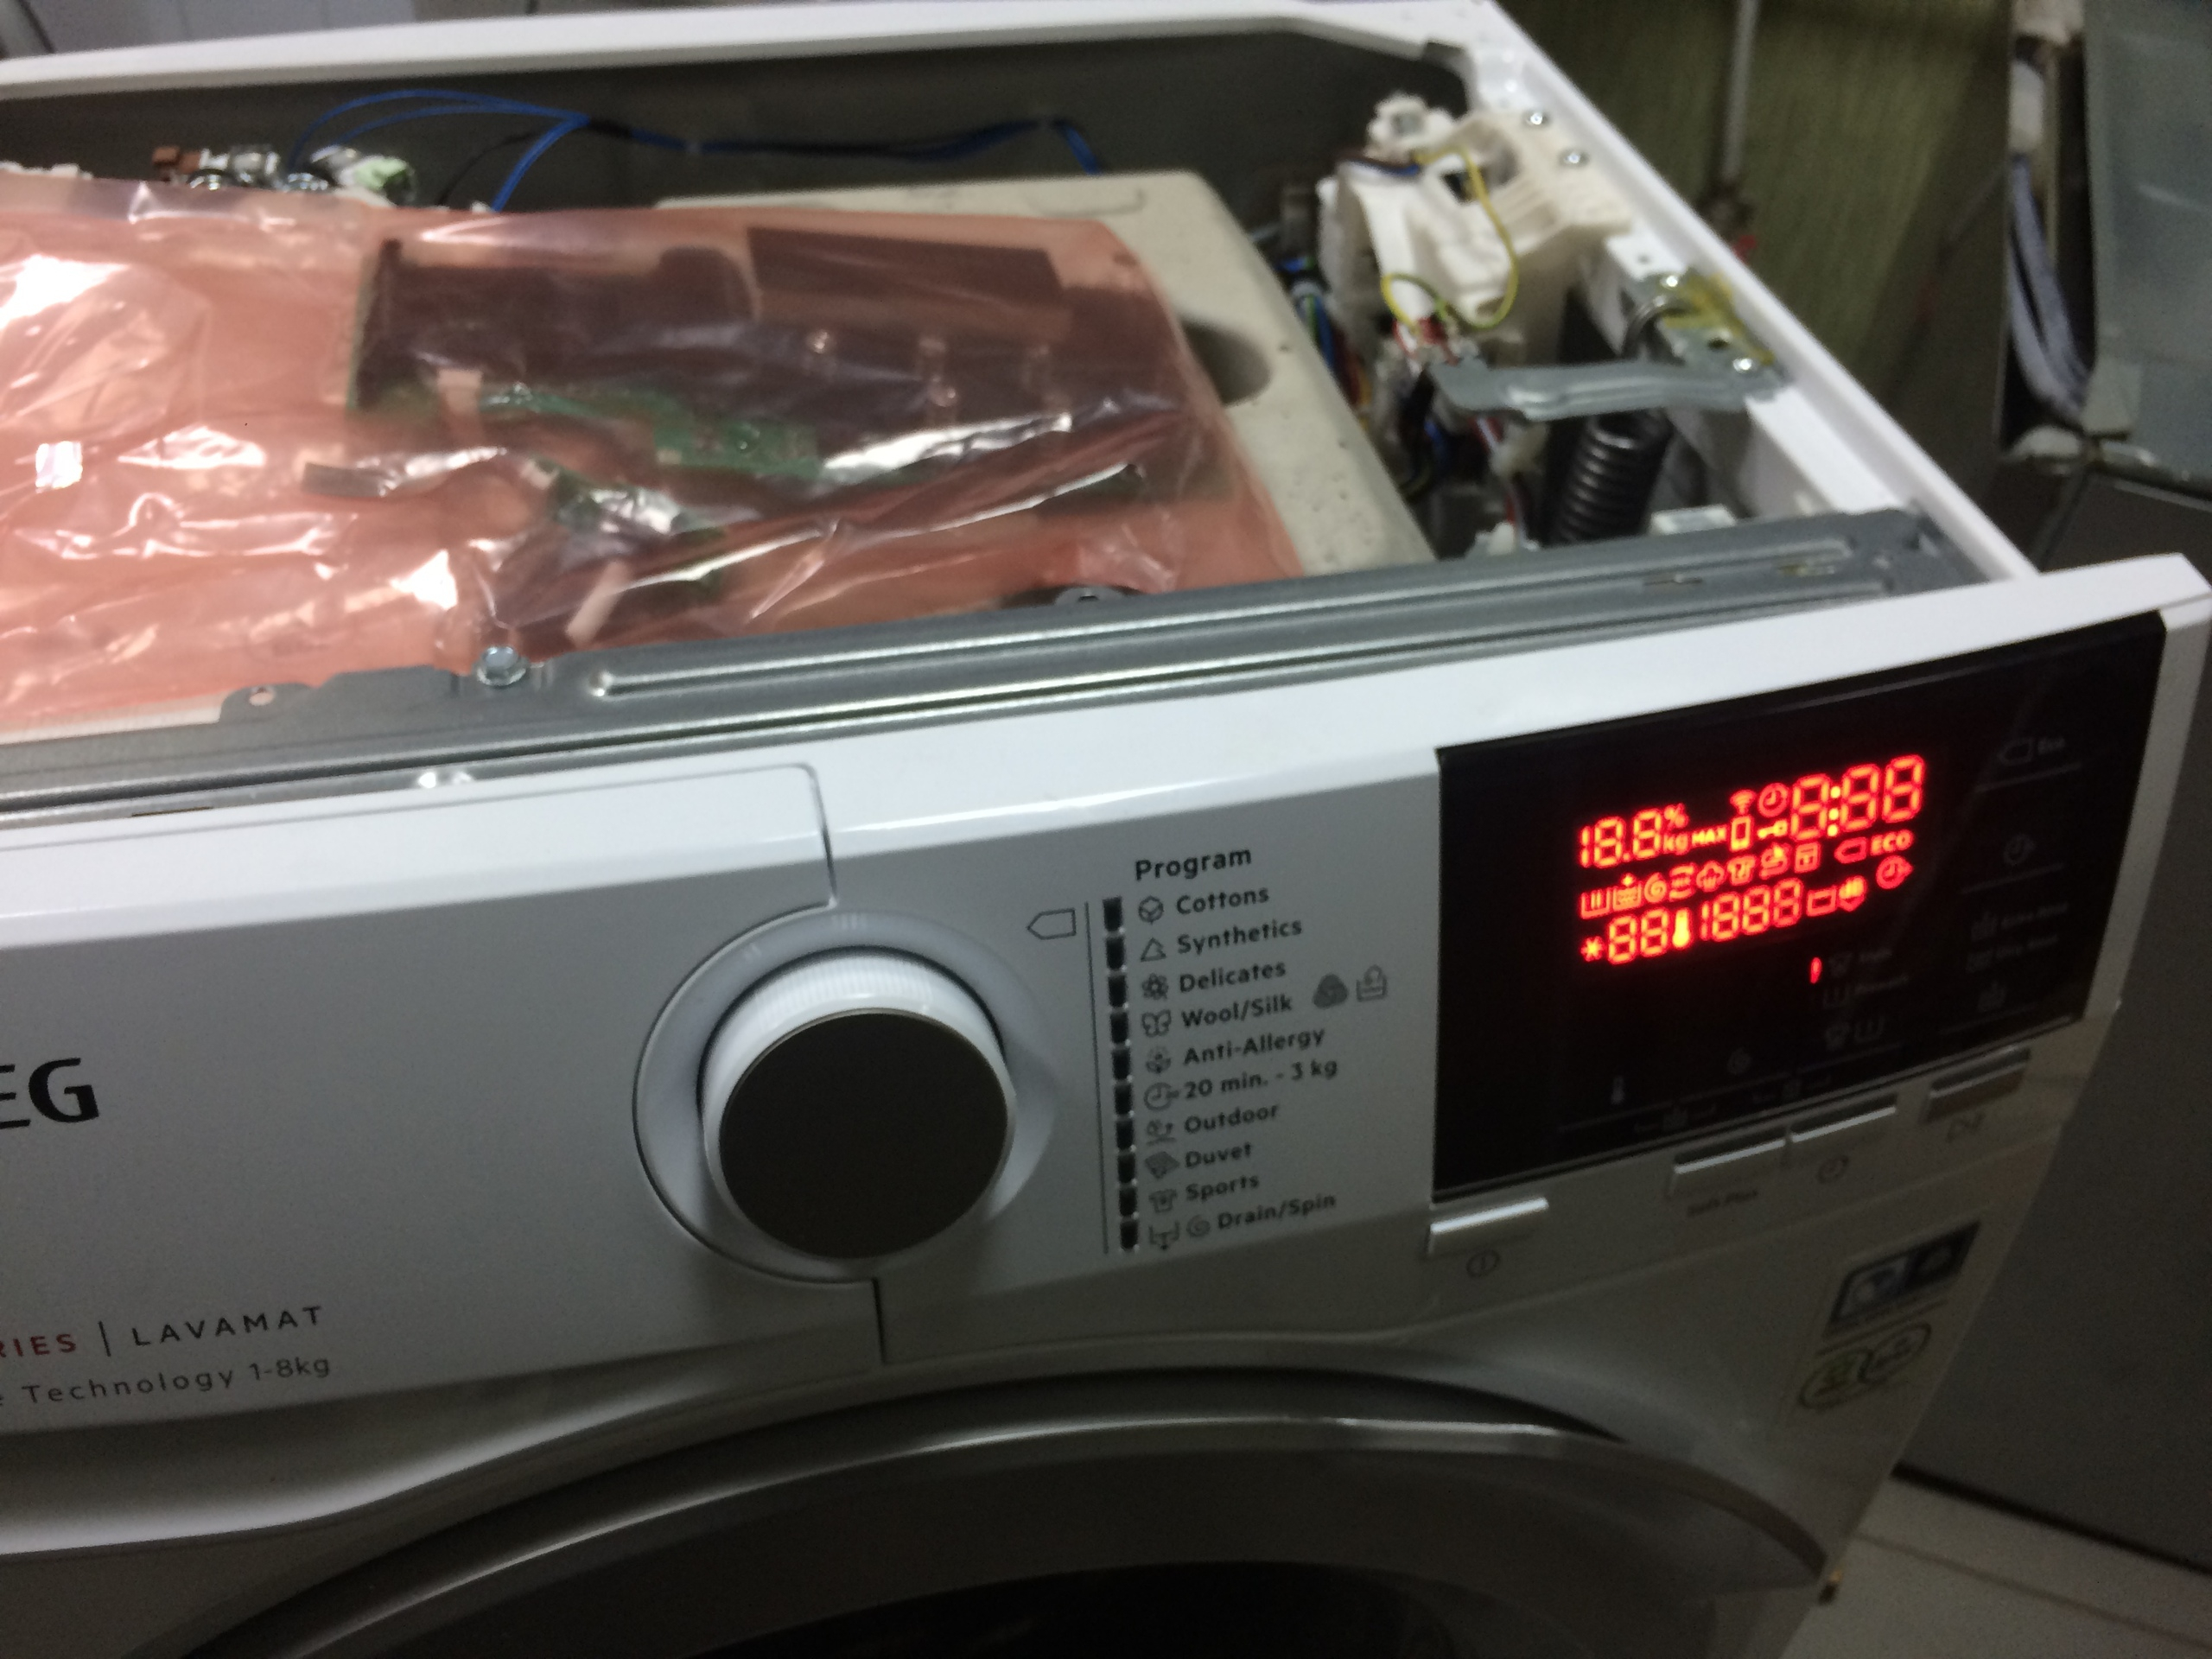 Ремонт стиральной машины AEG - ошибка Е41 по блокировке